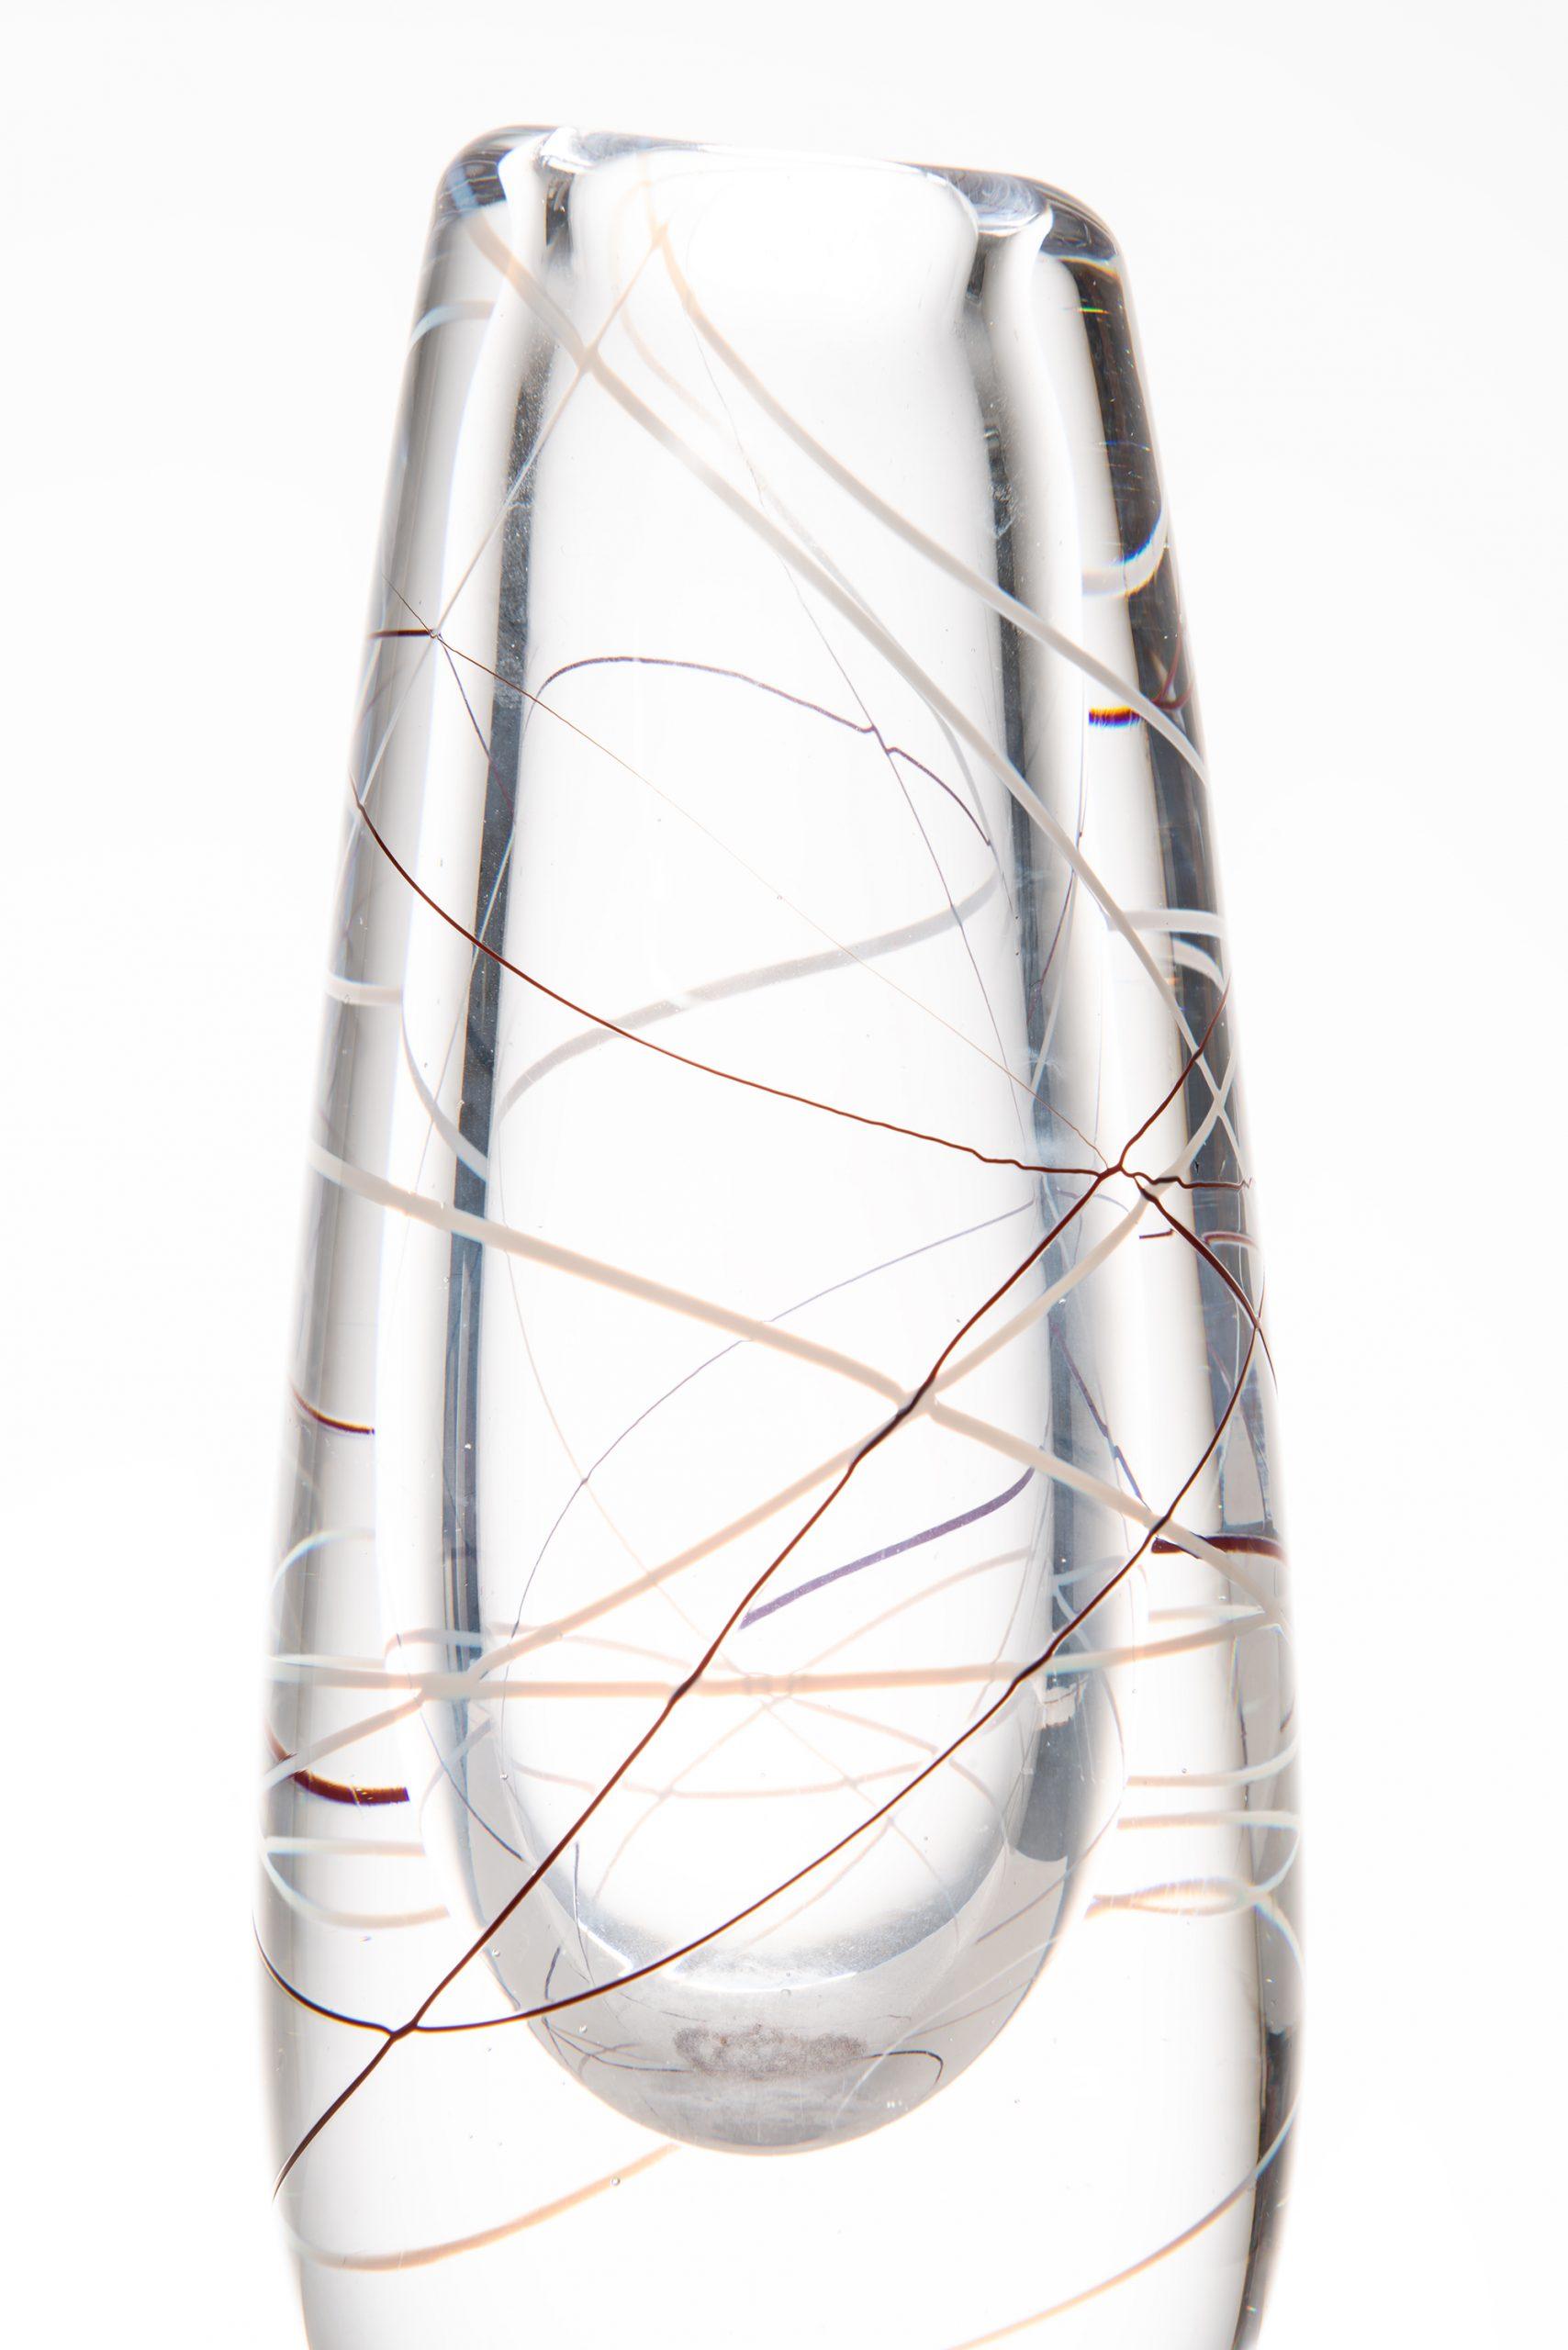 Vase en verre conçu par Vicke Lindstrand. Produit par Kosta en Suède. Signé 